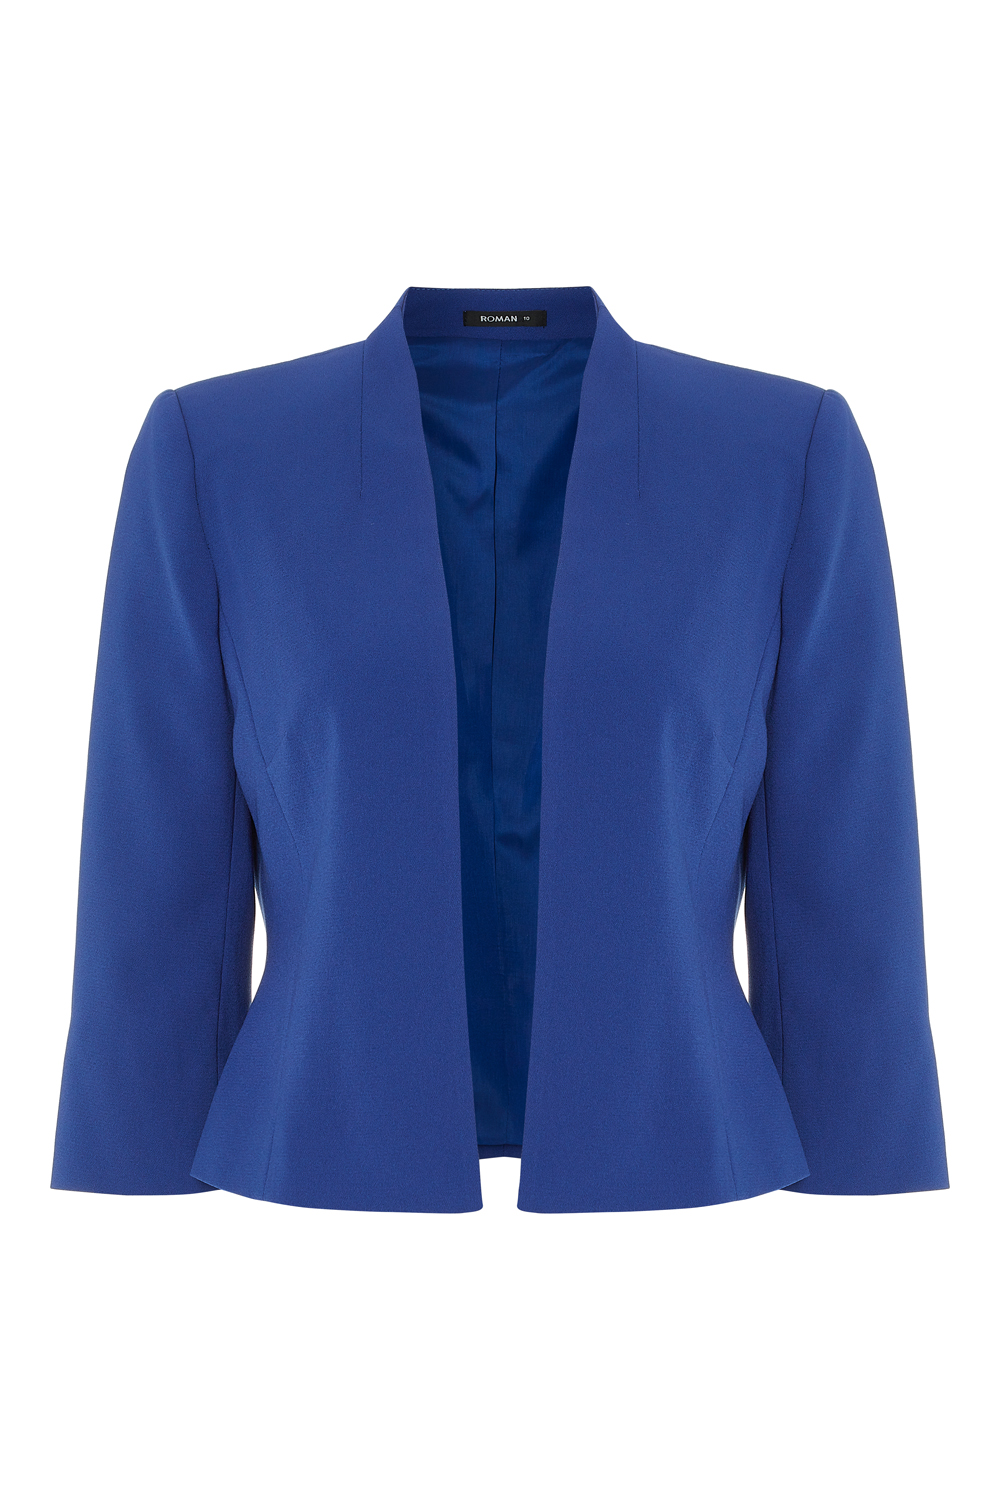 Royal Blue 3/4 Sleeve Rochette Jacket, Image 4 of 4